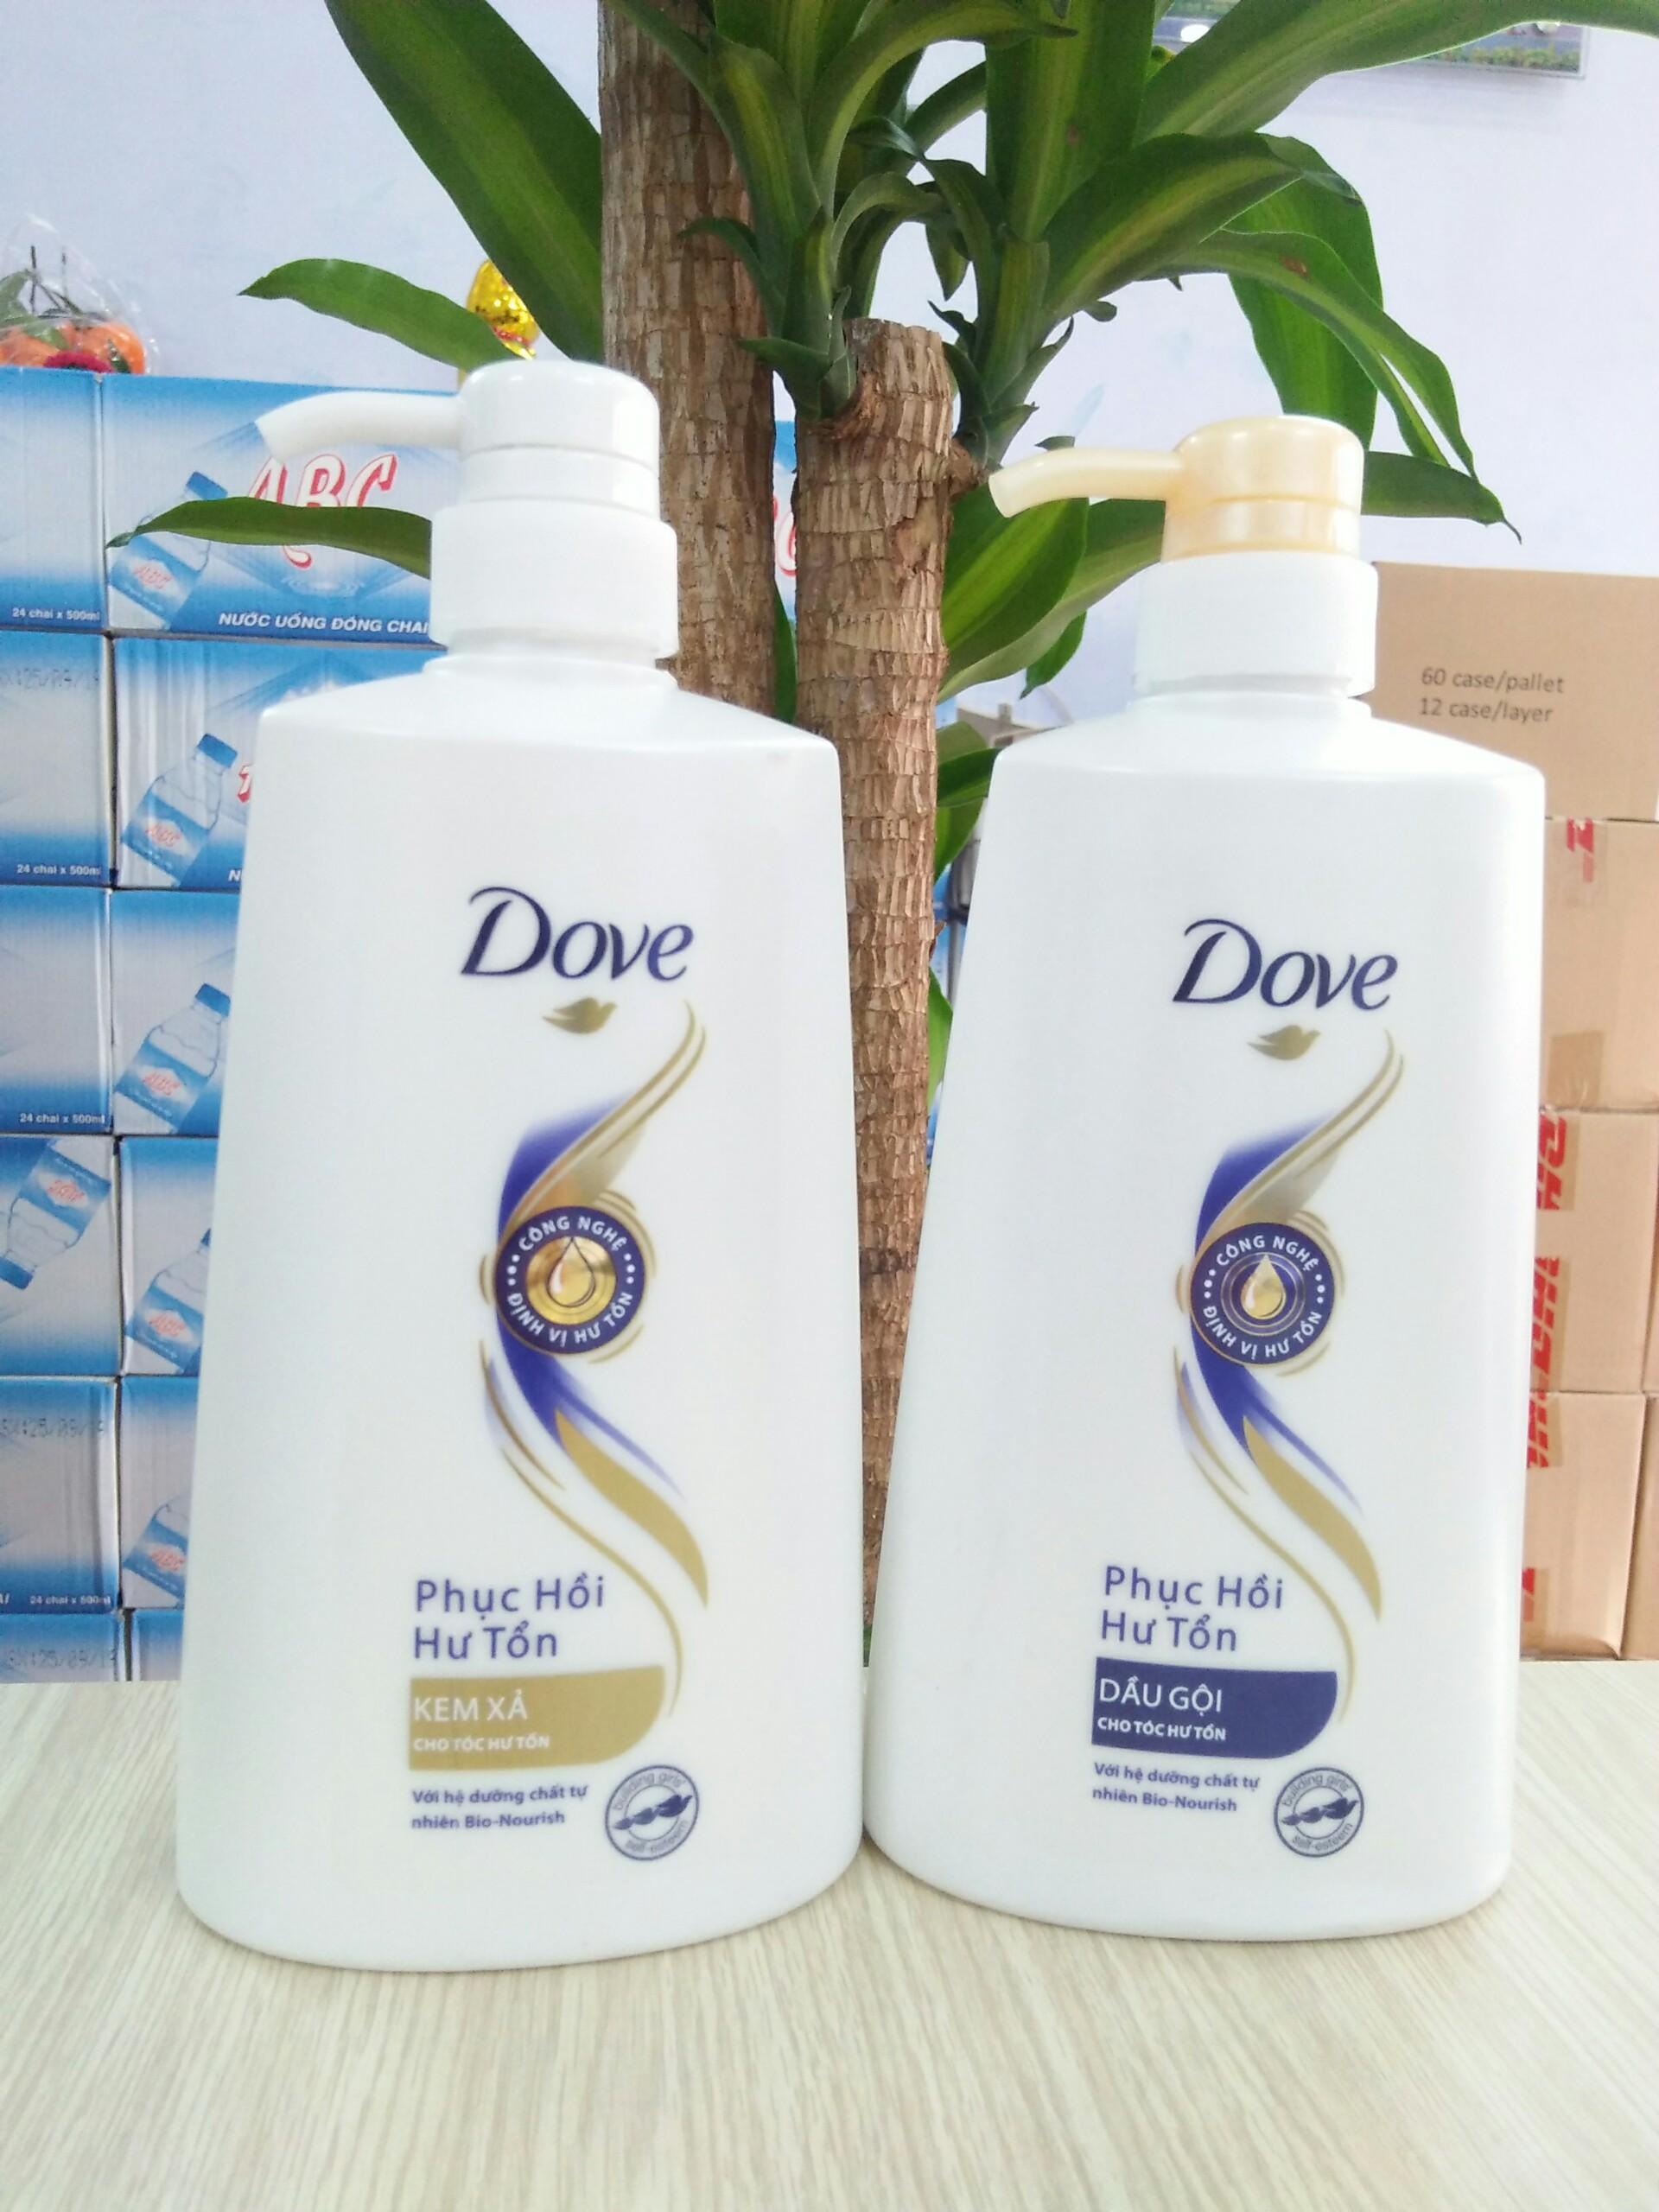 Dove dầu gội và kem xả sẽ là sự lựa chọn hoàn hảo cho tóc của bạn. Với công thức giàu dinh dưỡng từ thiên nhiên, sản phẩm này sẽ giúp bạn có một mái tóc mềm mượt, chắc khỏe và đầy sức sống. Hãy xem hình ảnh để thấy sự khác biệt.